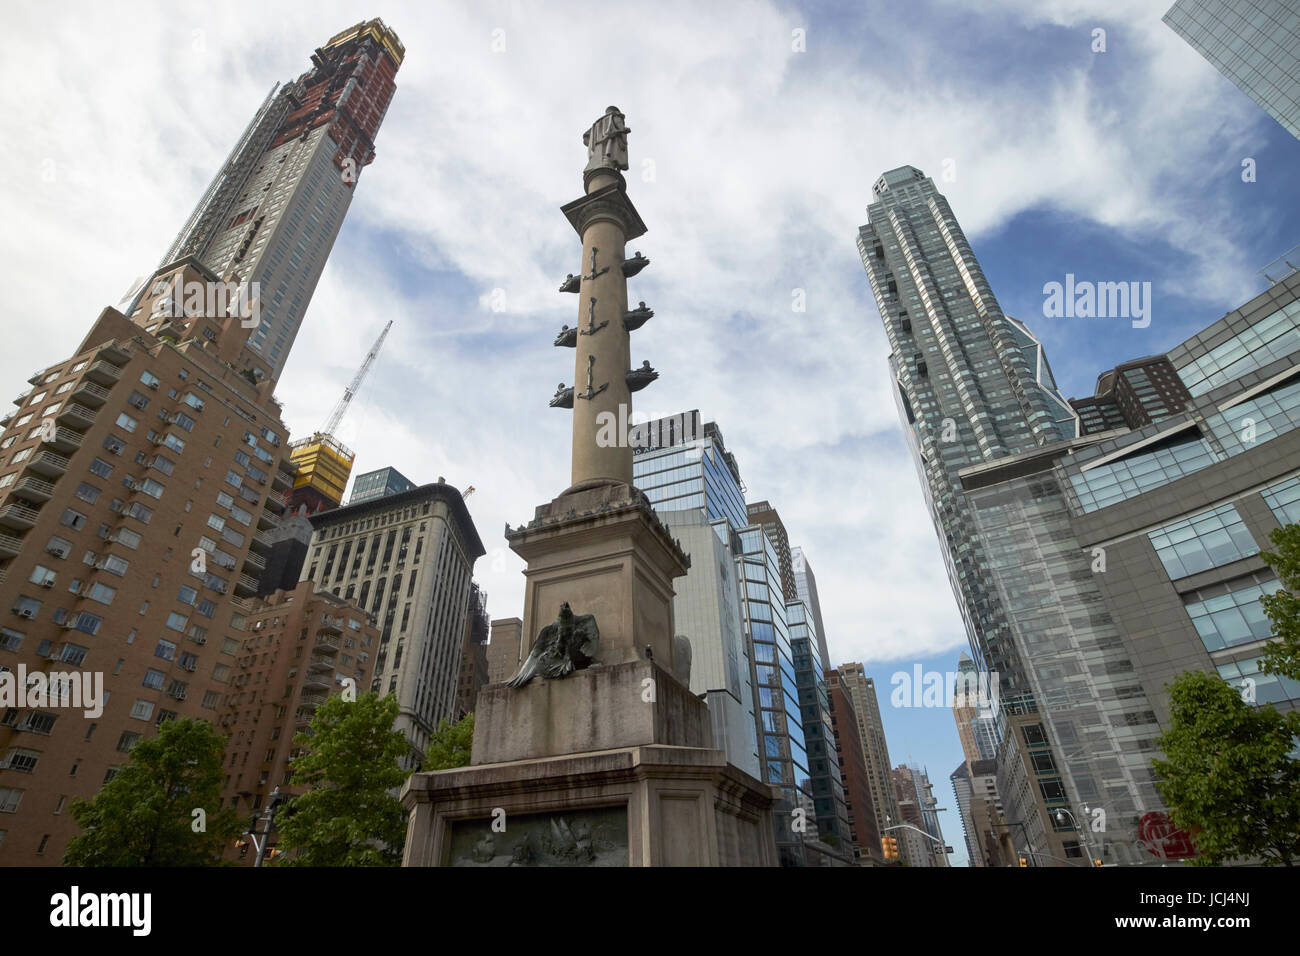 Statua di Cristoforo Colombo a Columbus circle con lusso costoso south central park edifici di appartamenti New York City USA Foto Stock